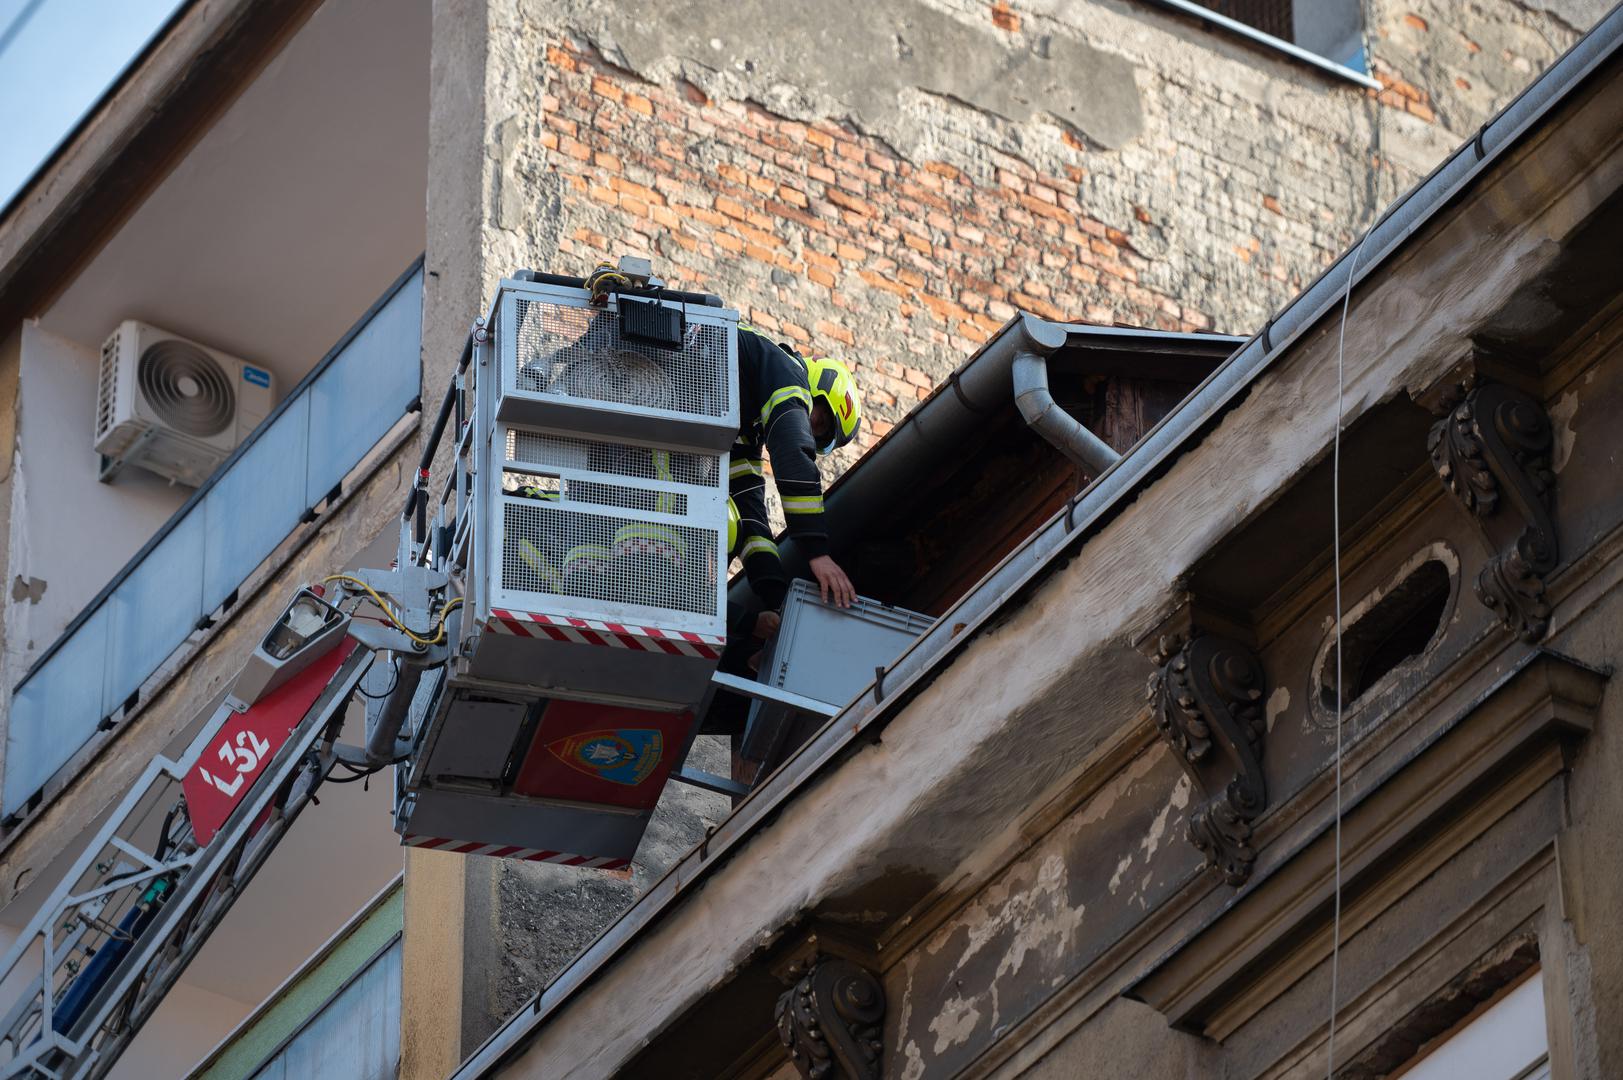 Vatrogasci su pomoću visinskog vozila spašavali jednog čovjeka s balkona gorućeg stana u Palmotićevoj ulici u samom centru Zagreba, spriječivši tako moguće veće tragedije.